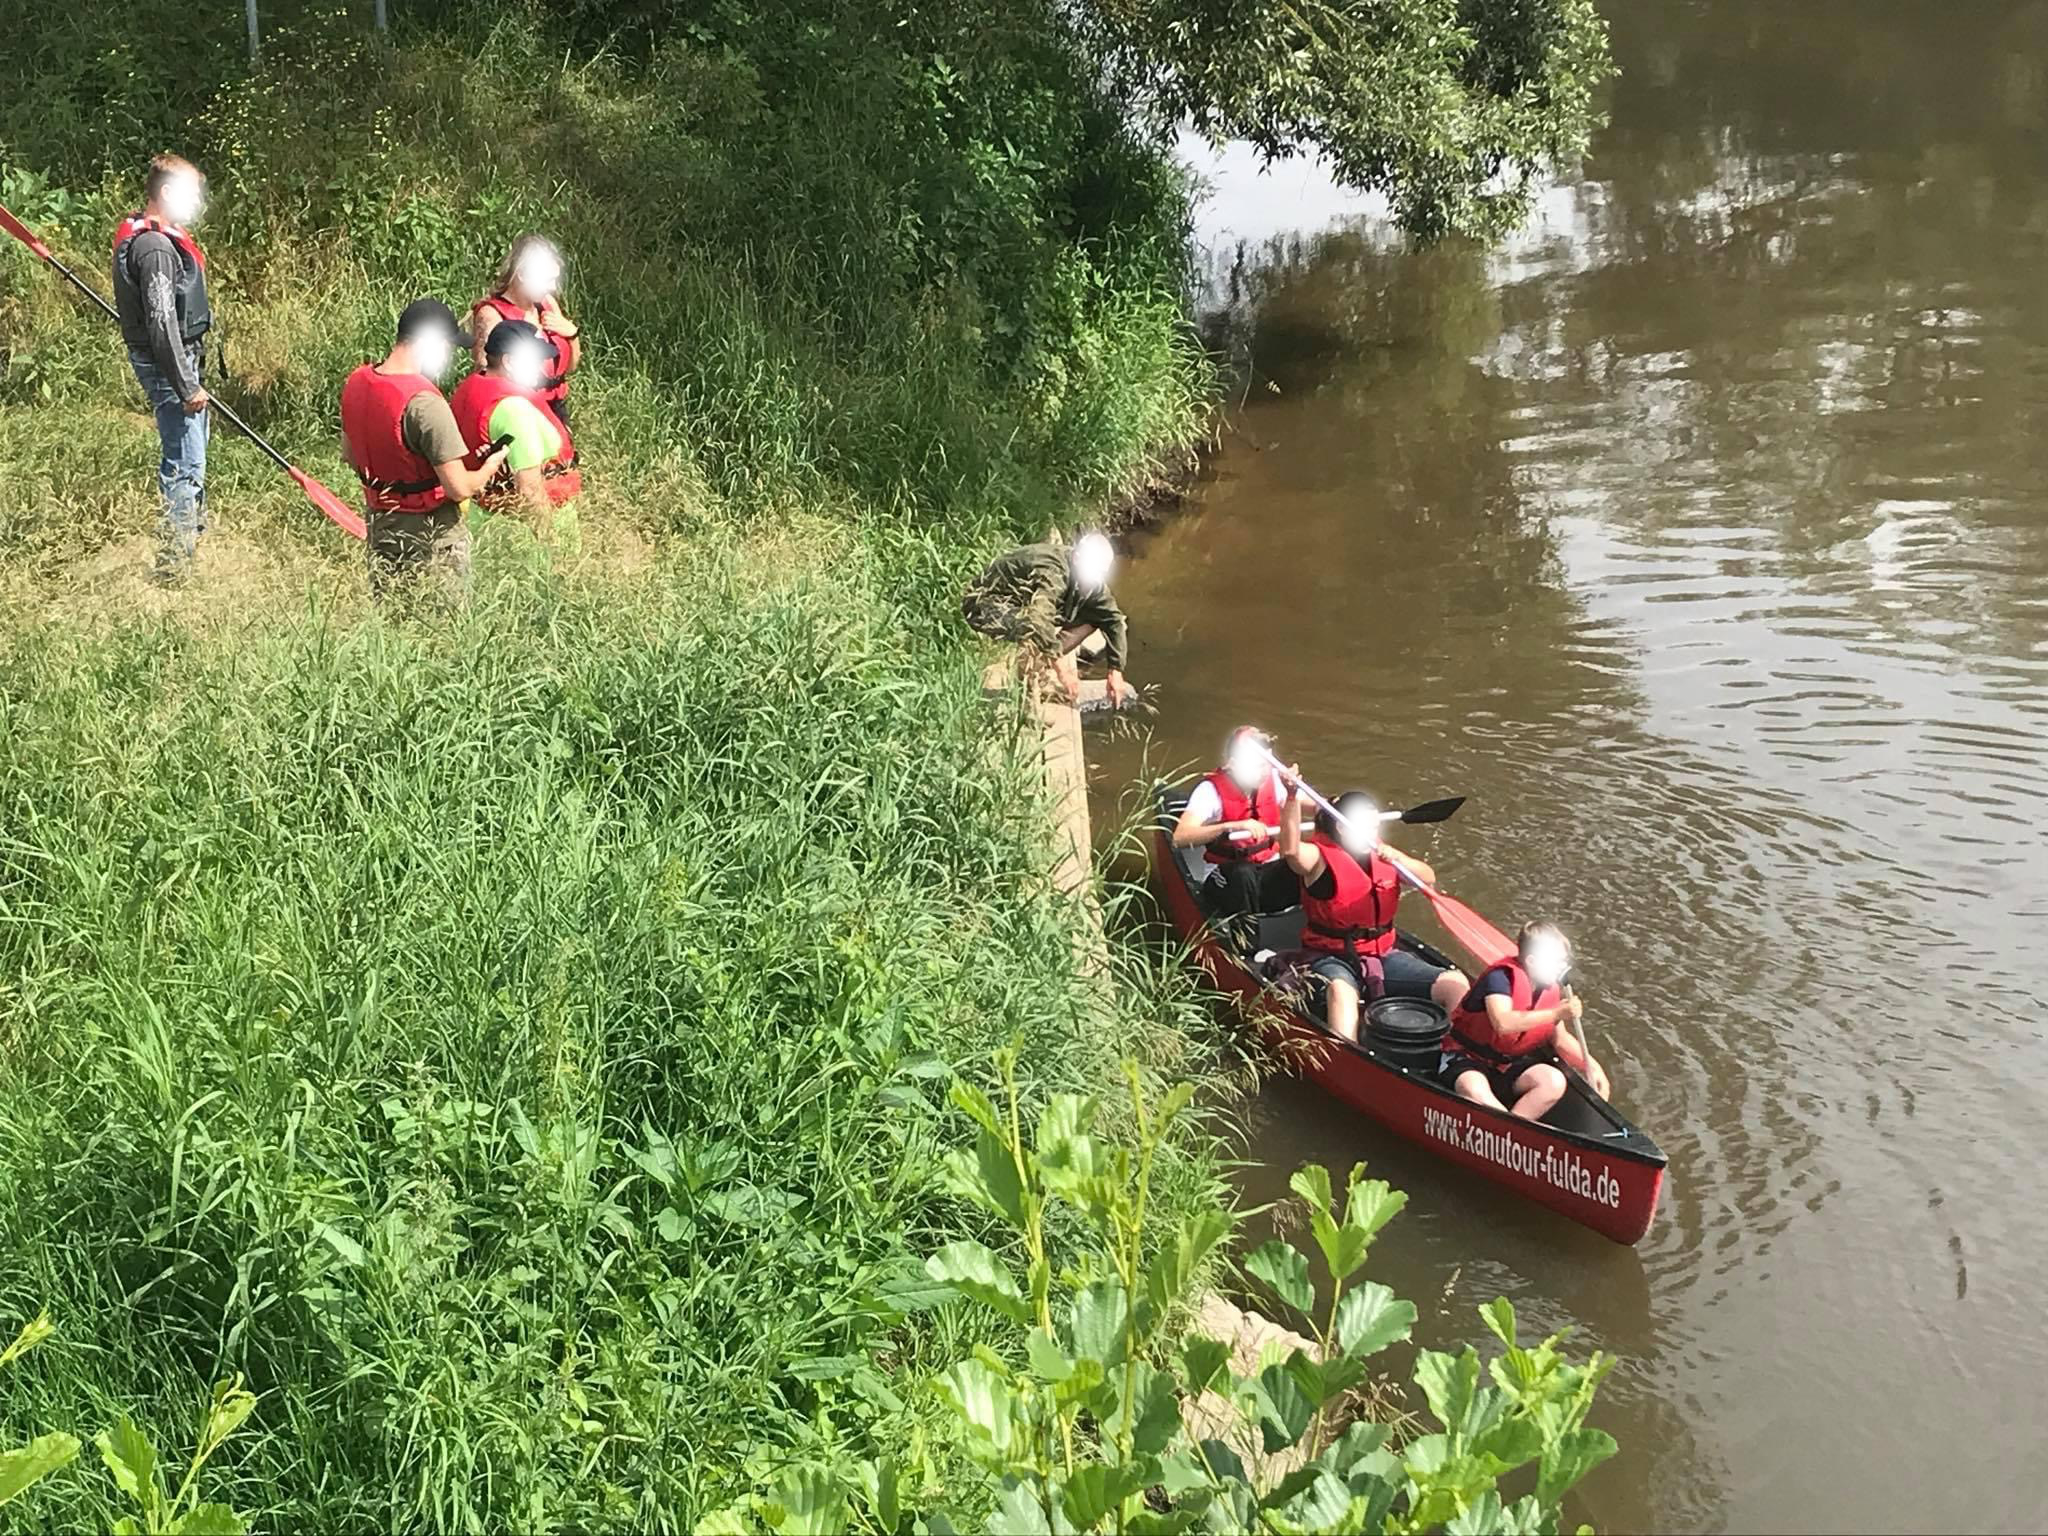 Ein rotes Kanu mit drei Personen schwimmt auf einem Fluss, während 5 weitere Personen am Ufer stehen und zusehen.